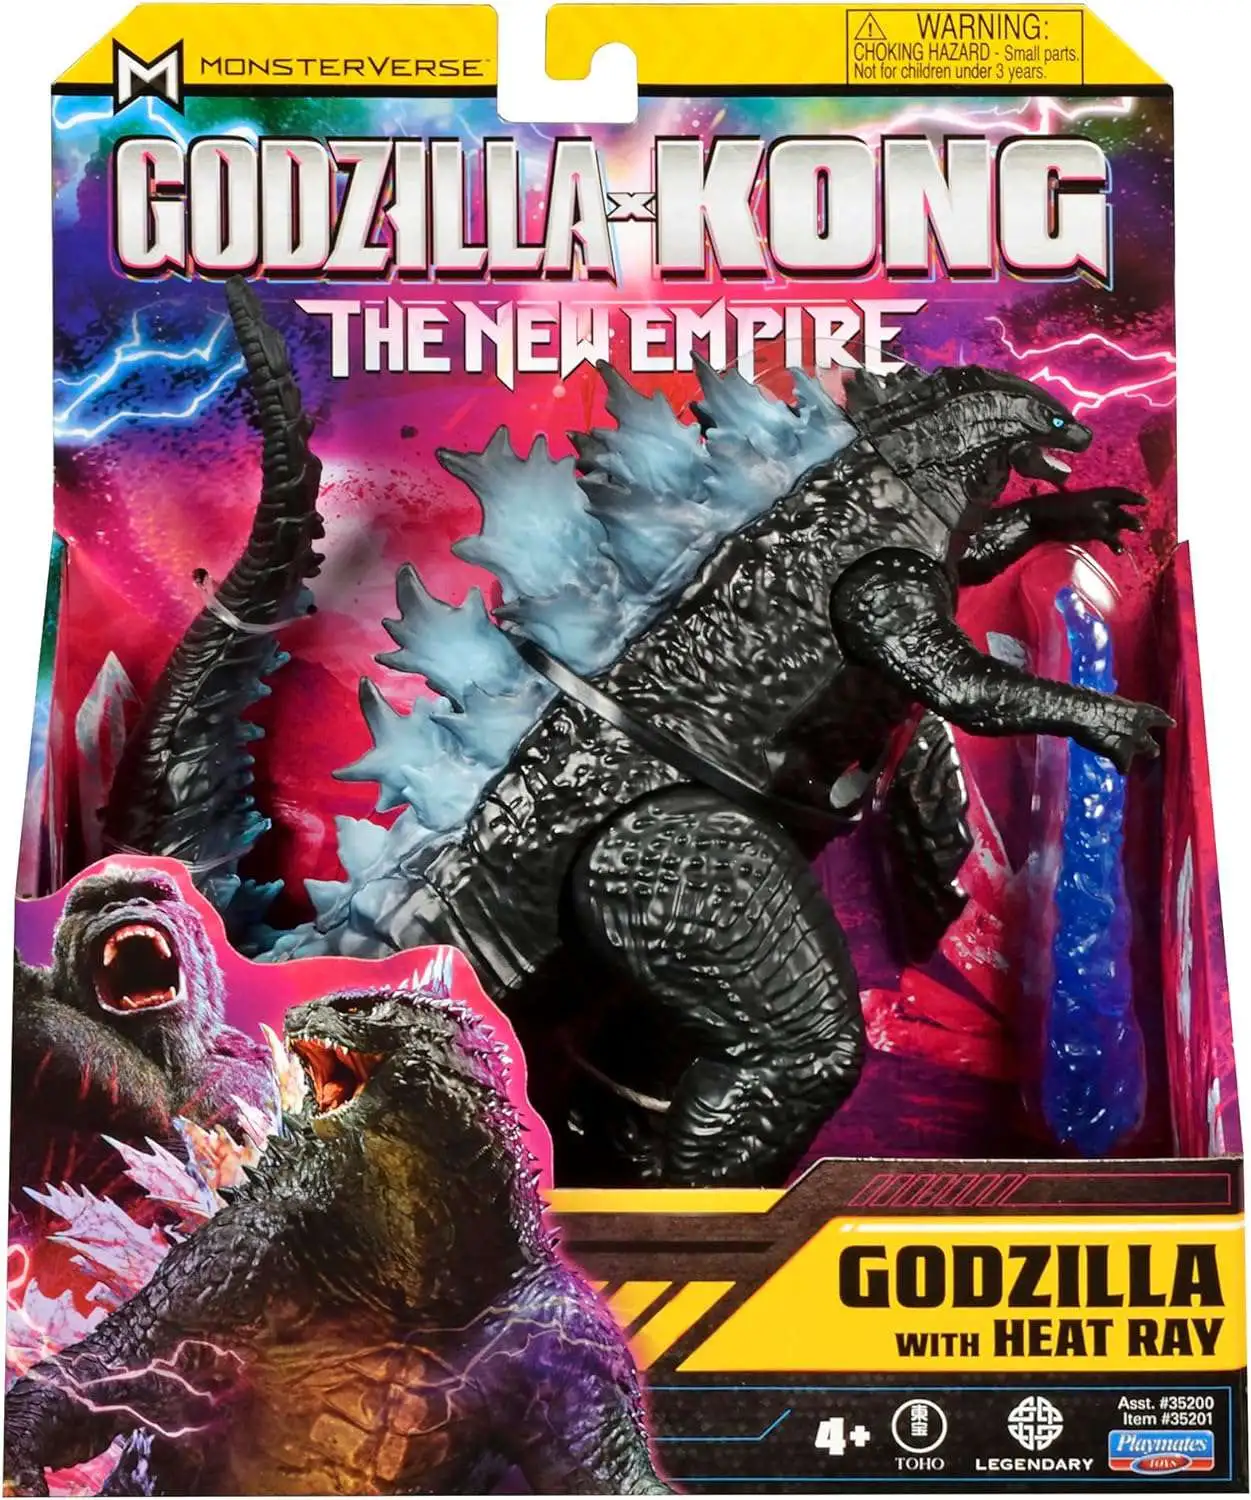 My homemade Godzilla x Kong the new empire toy : r/GodzillaDoingThings